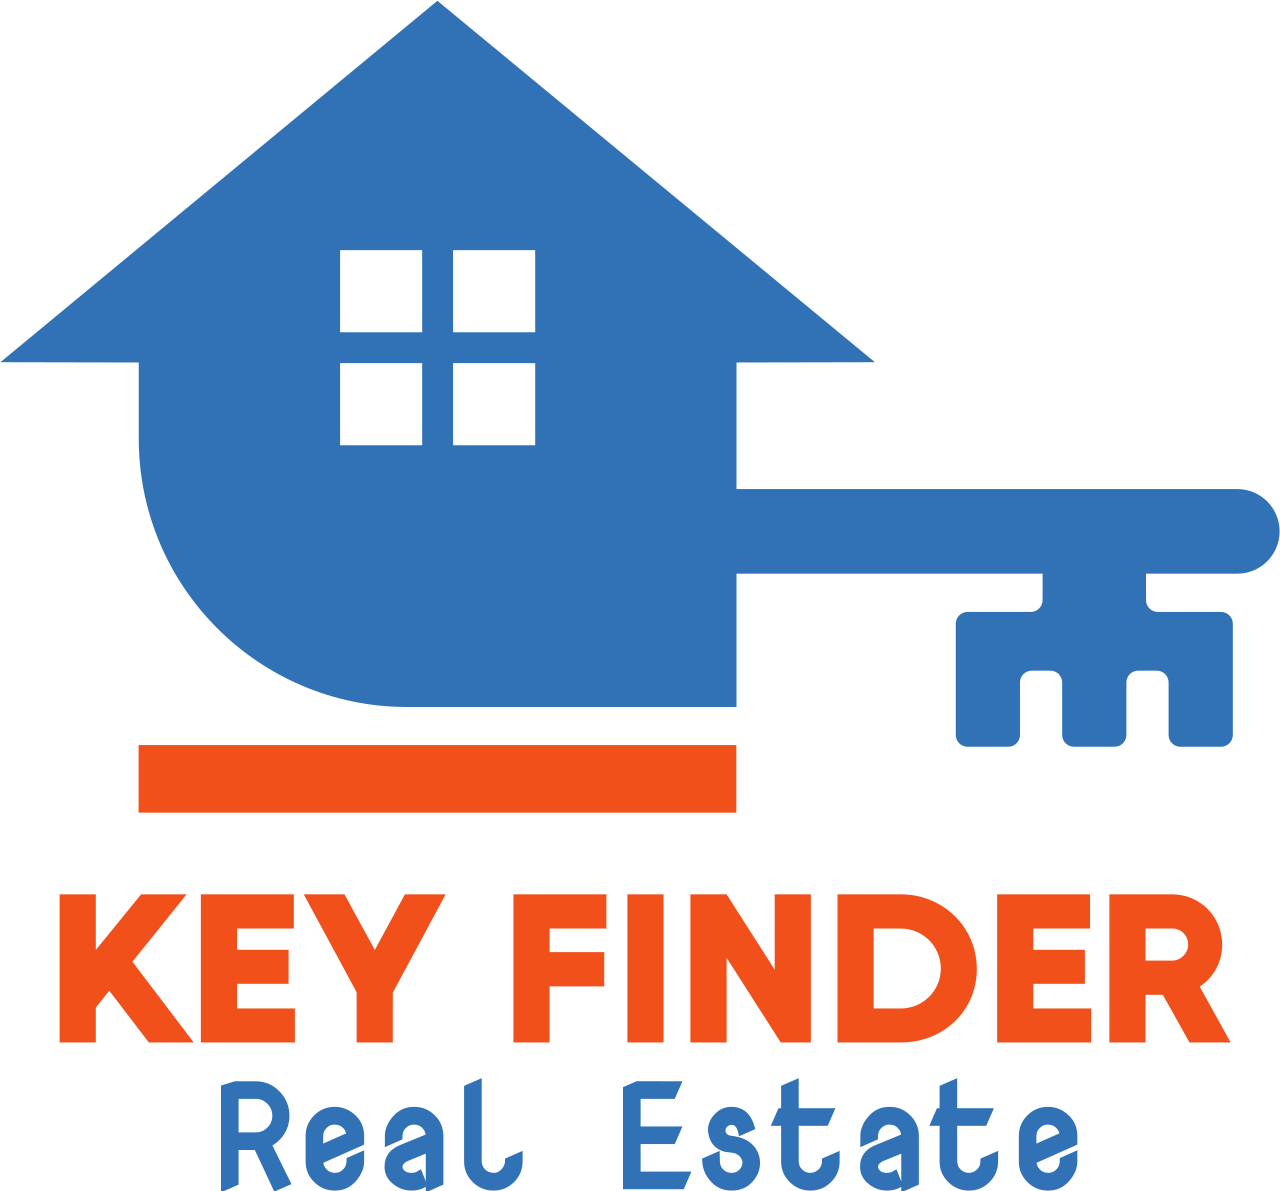 Key Finder's web page